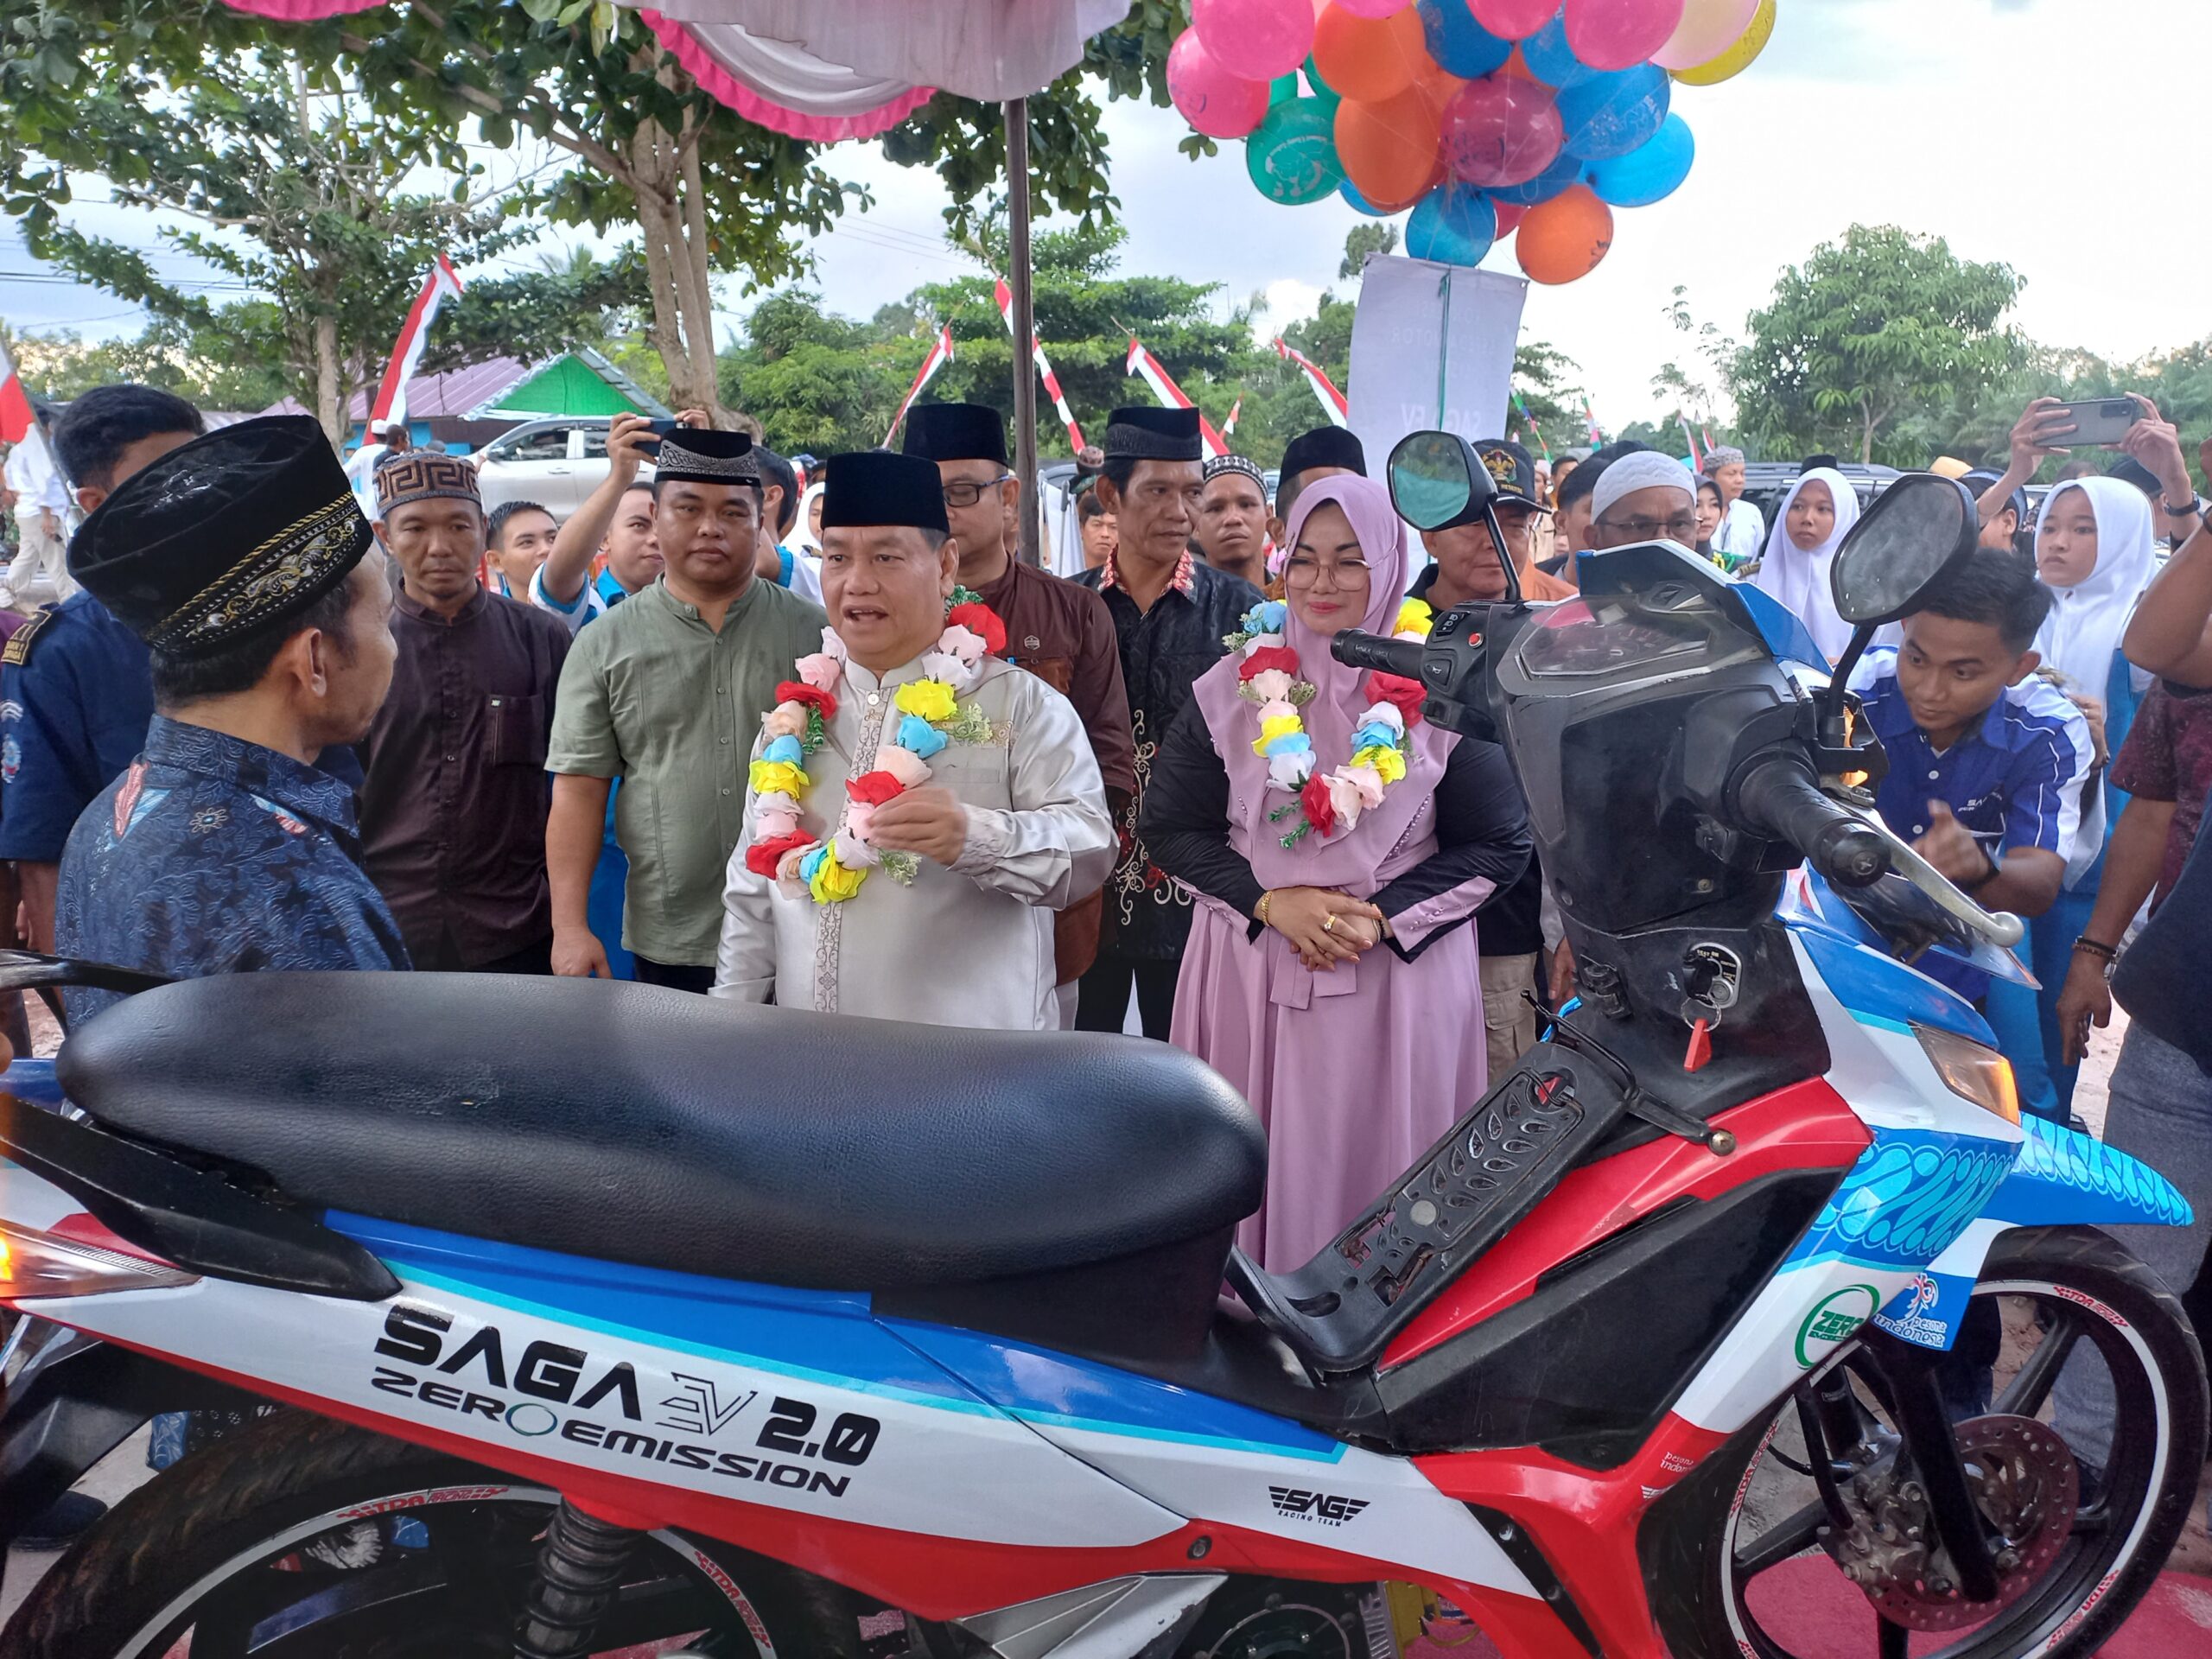 motor listrik hasil konversi yang dilakukan murid SMKN 1 Cempaga Kabupaten Kotim